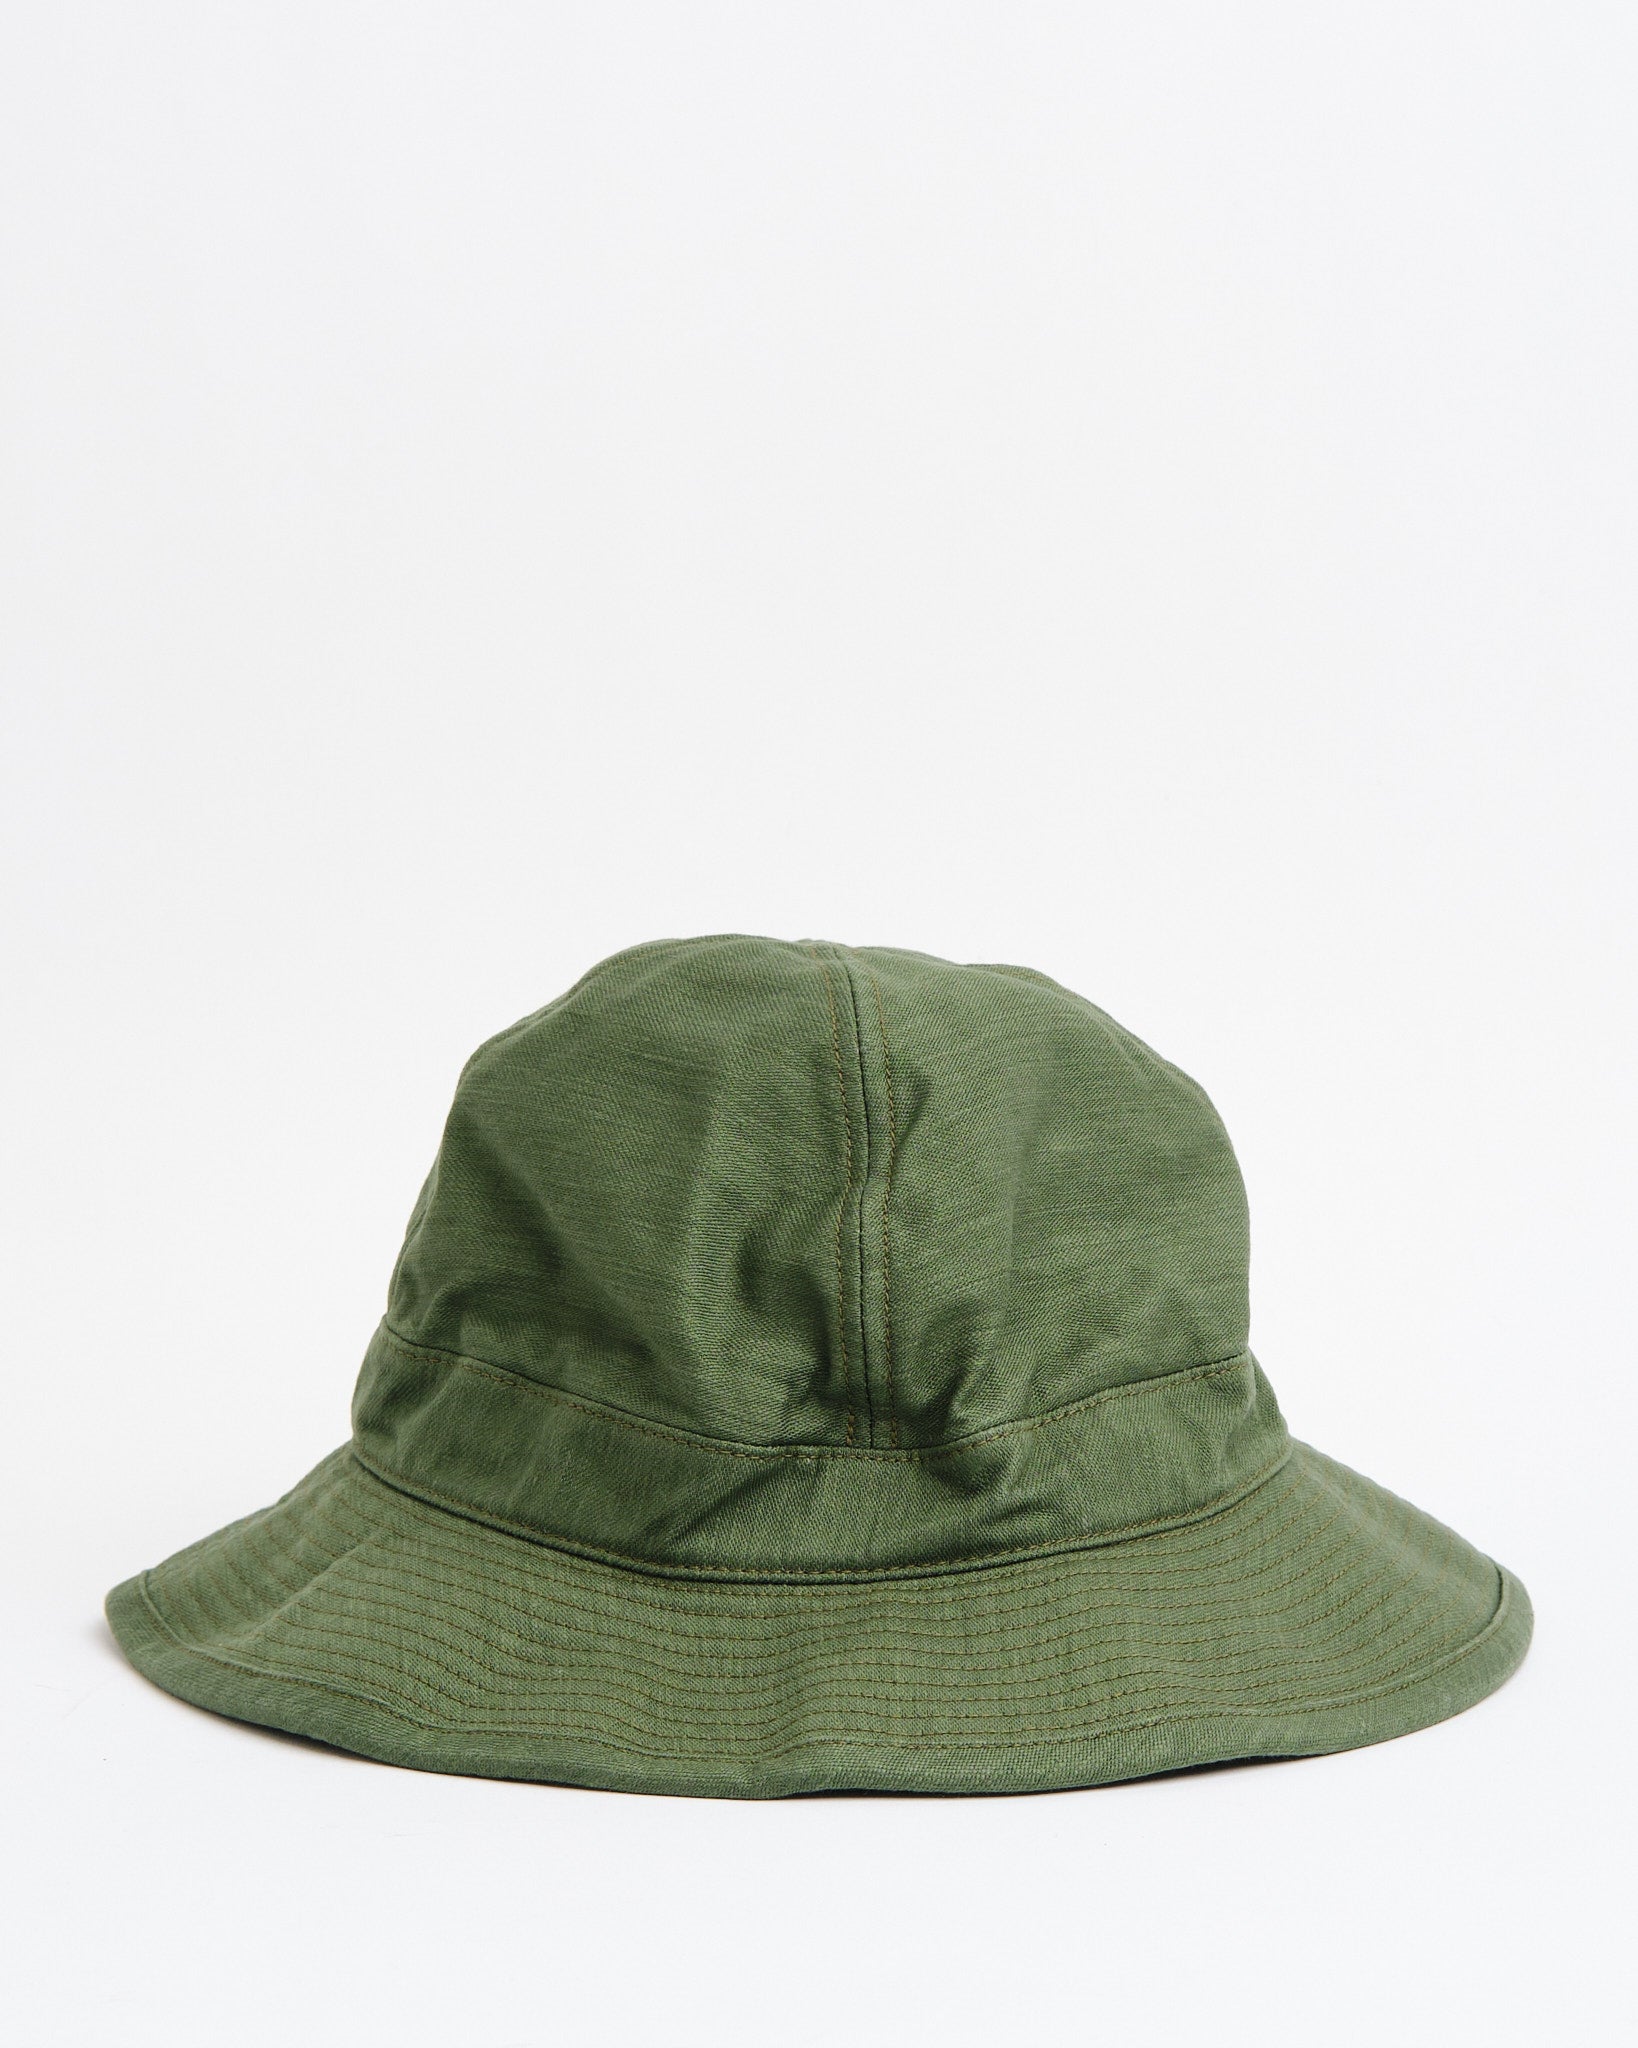 US Navy Hat Herringbone Green - 1 / Green — Headwear Orslow